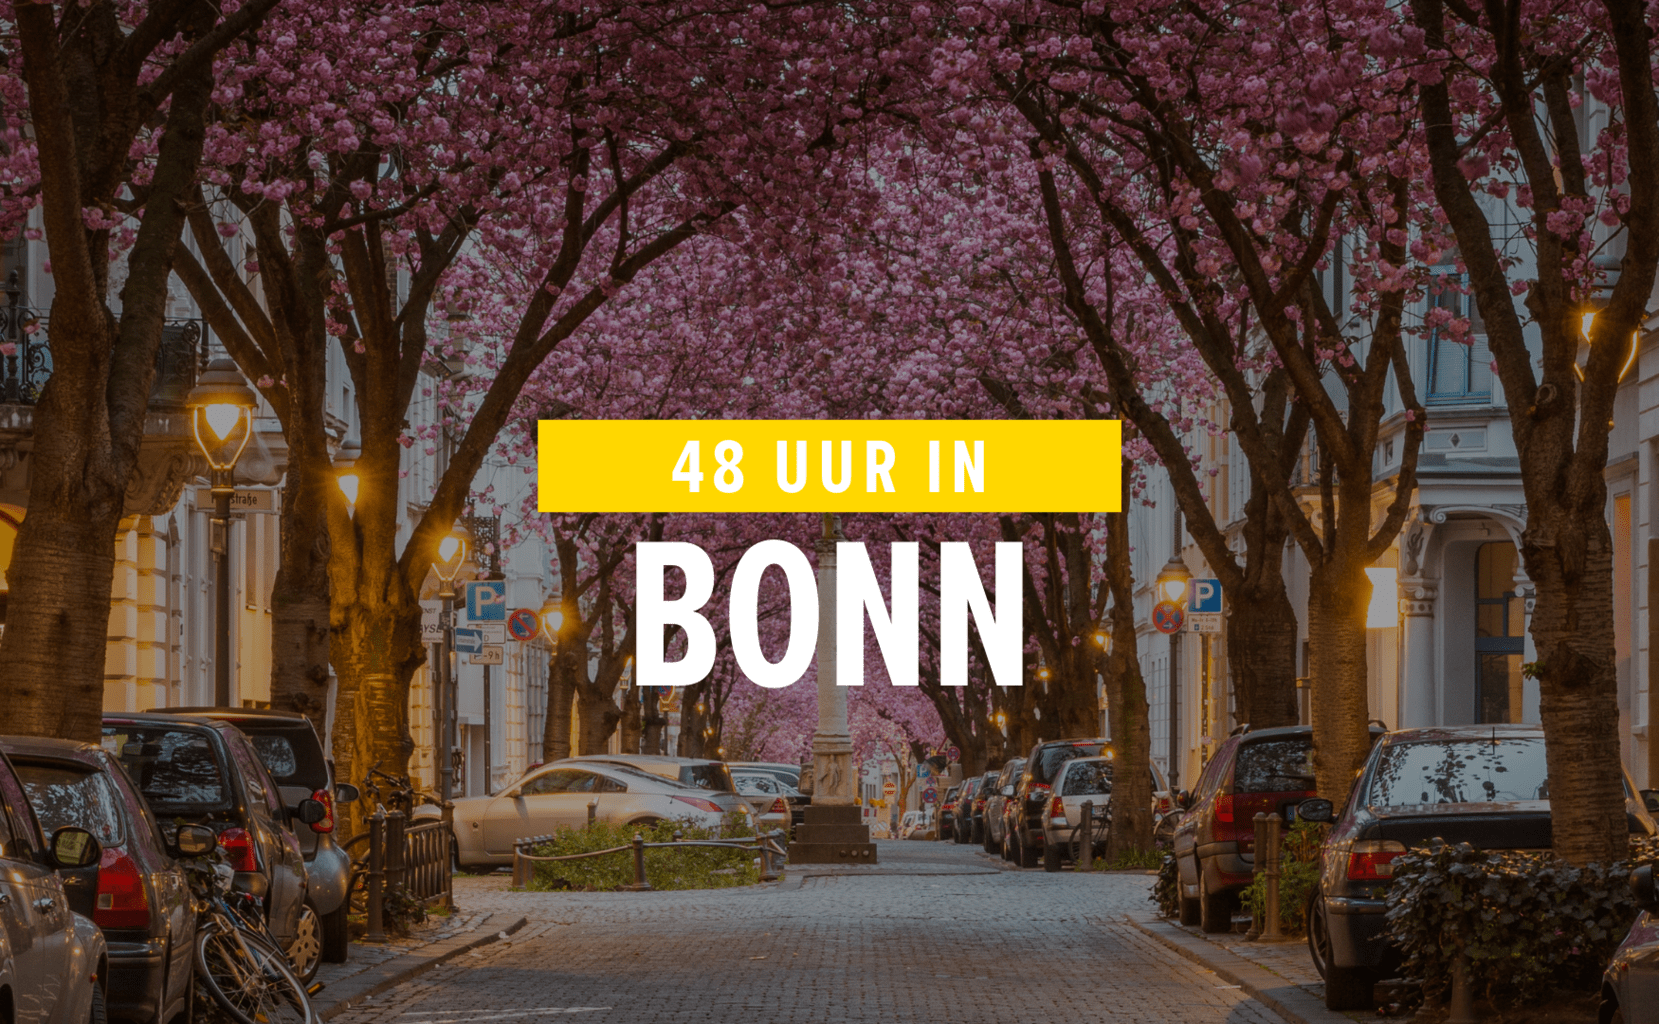 Bonn is de voormalige hoofdstad van Duitsland met supermooie kersenbomen in de oude stad